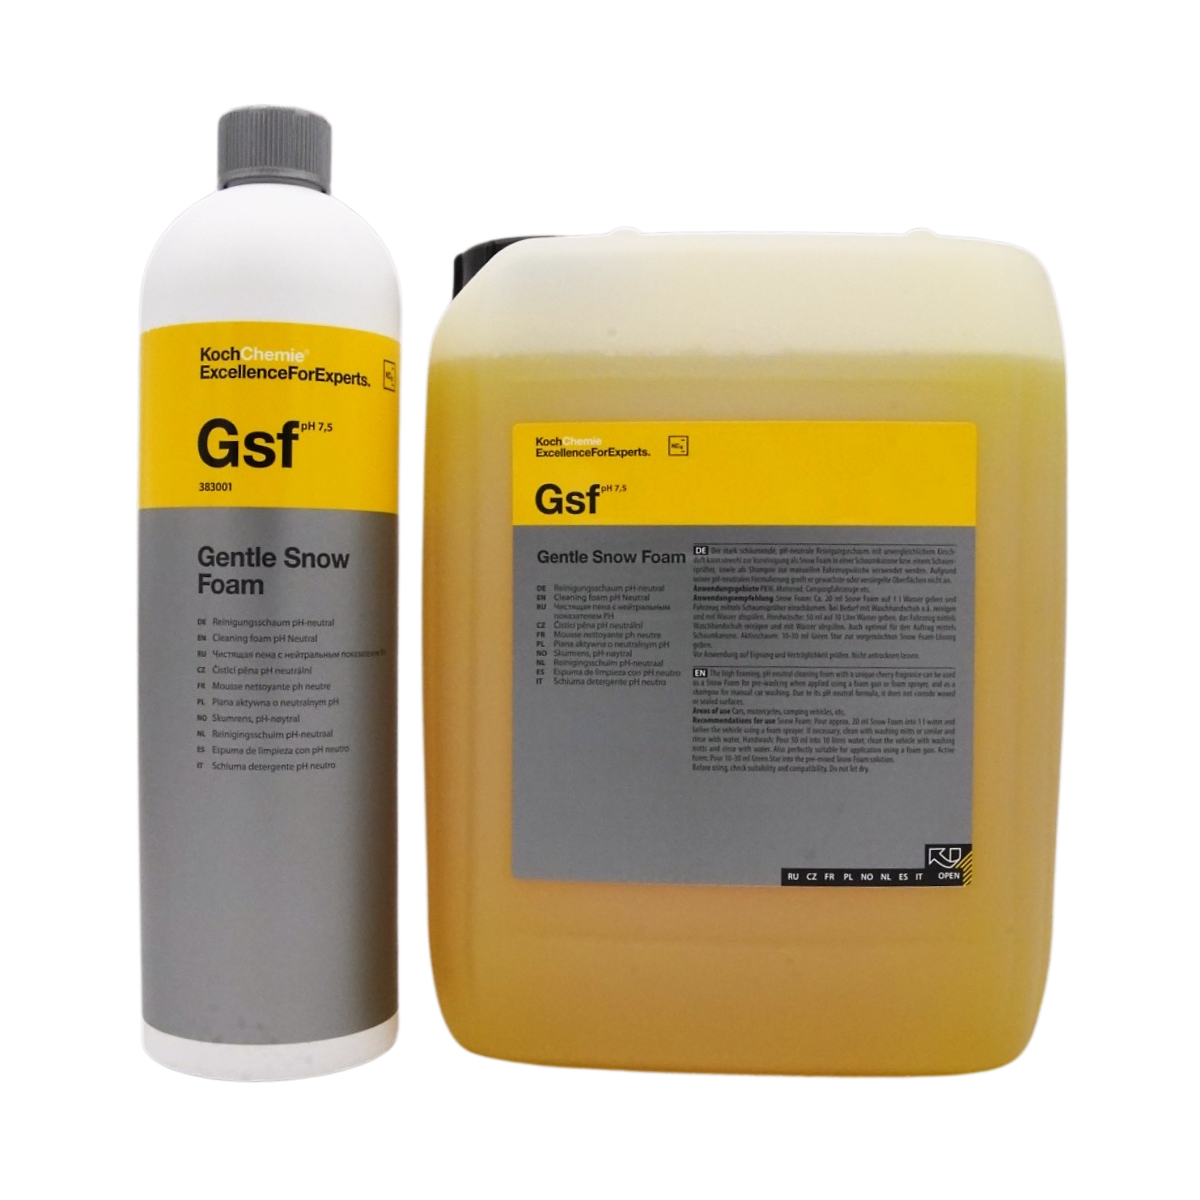 Koch Chemie Gsf - Gentle Snow Foam 5l